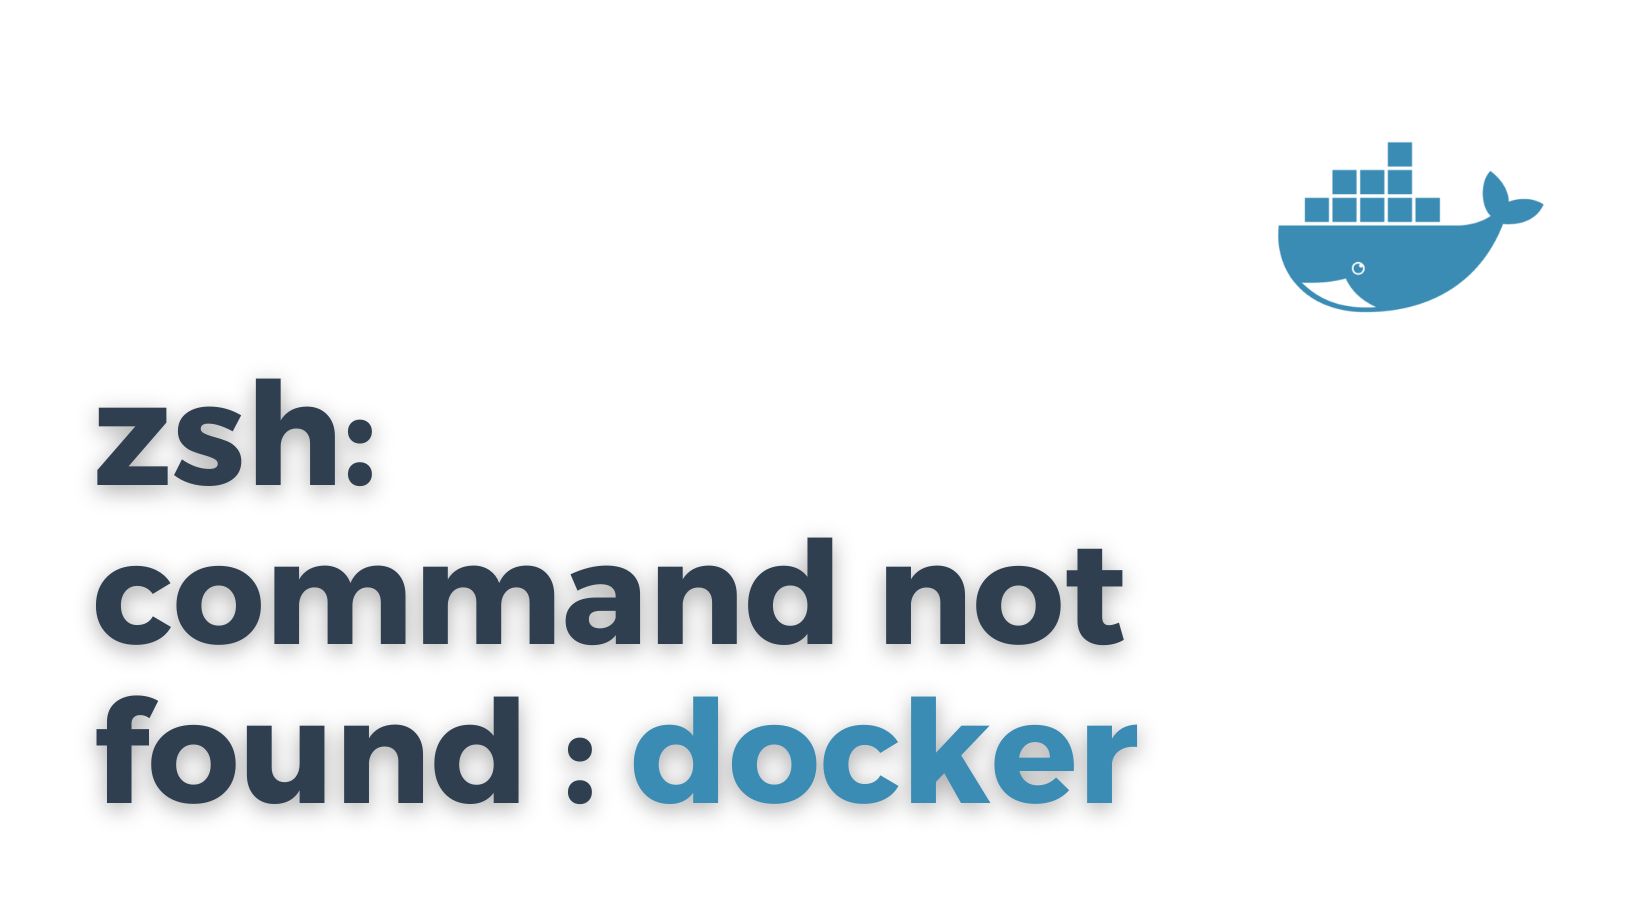 zsh: docker command not found